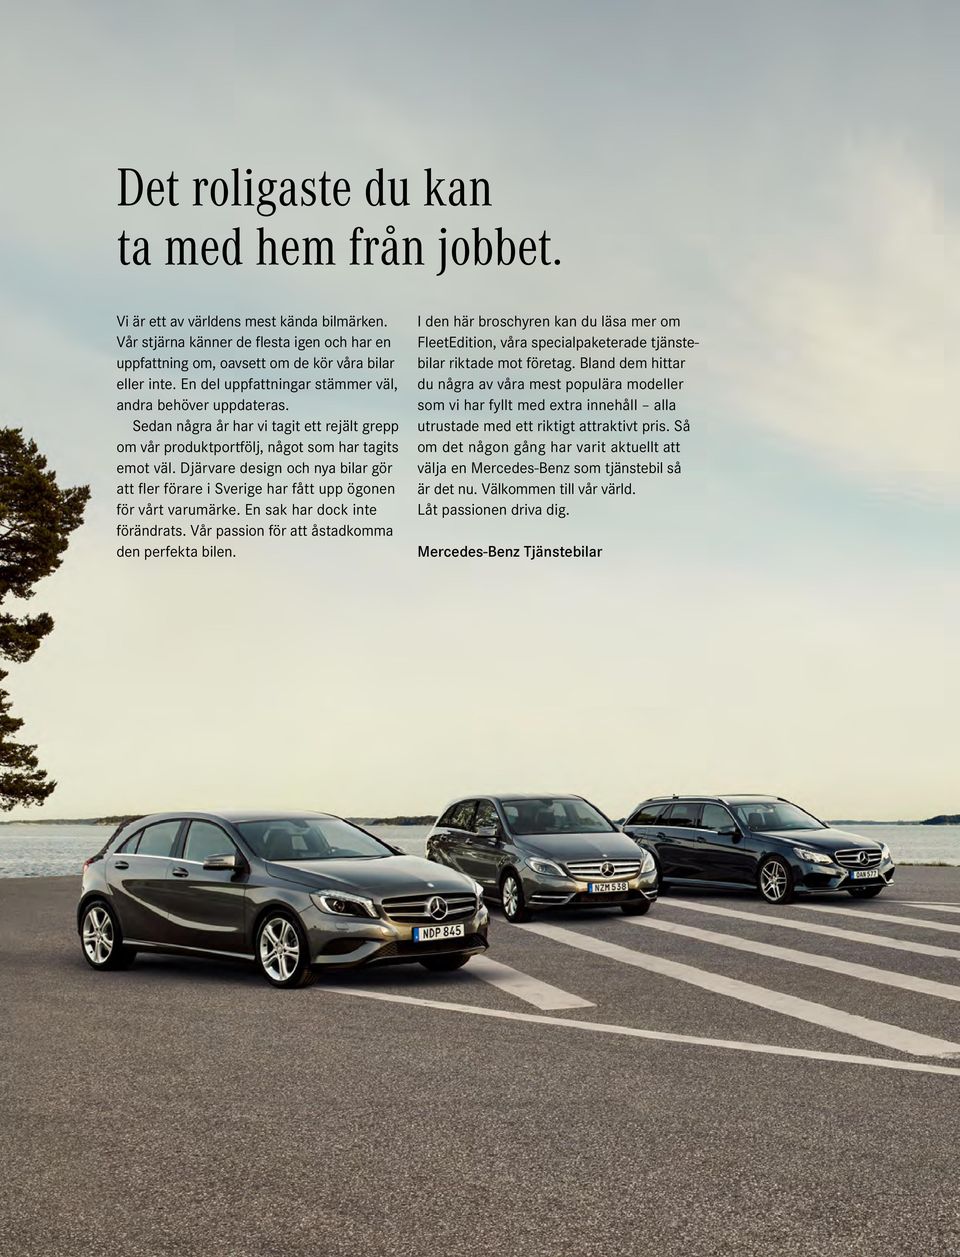 Djärvare design och nya bilar gör att fler förare i Sverige har fått upp ögonen för vårt varumärke. En sak har dock inte förändrats. Vår passion för att åstadkomma den perfekta bilen.